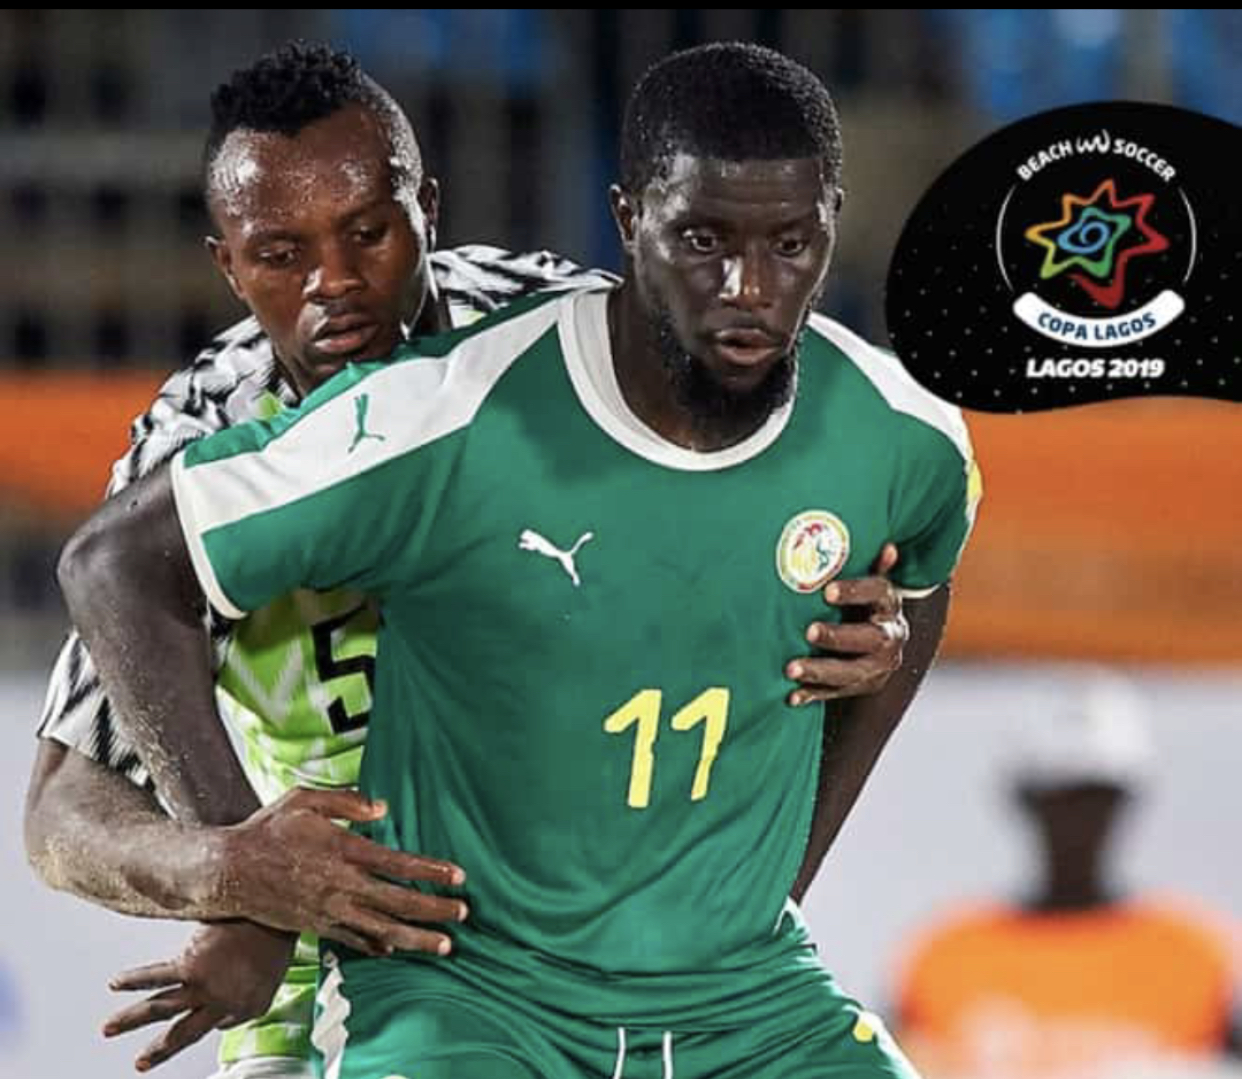 Beach soccer / Copa Lagos : Deuxième victoire d'affilée pour les "Lions" qui remportent le tournoi (Sénégal 5 - 2 Nigéria)